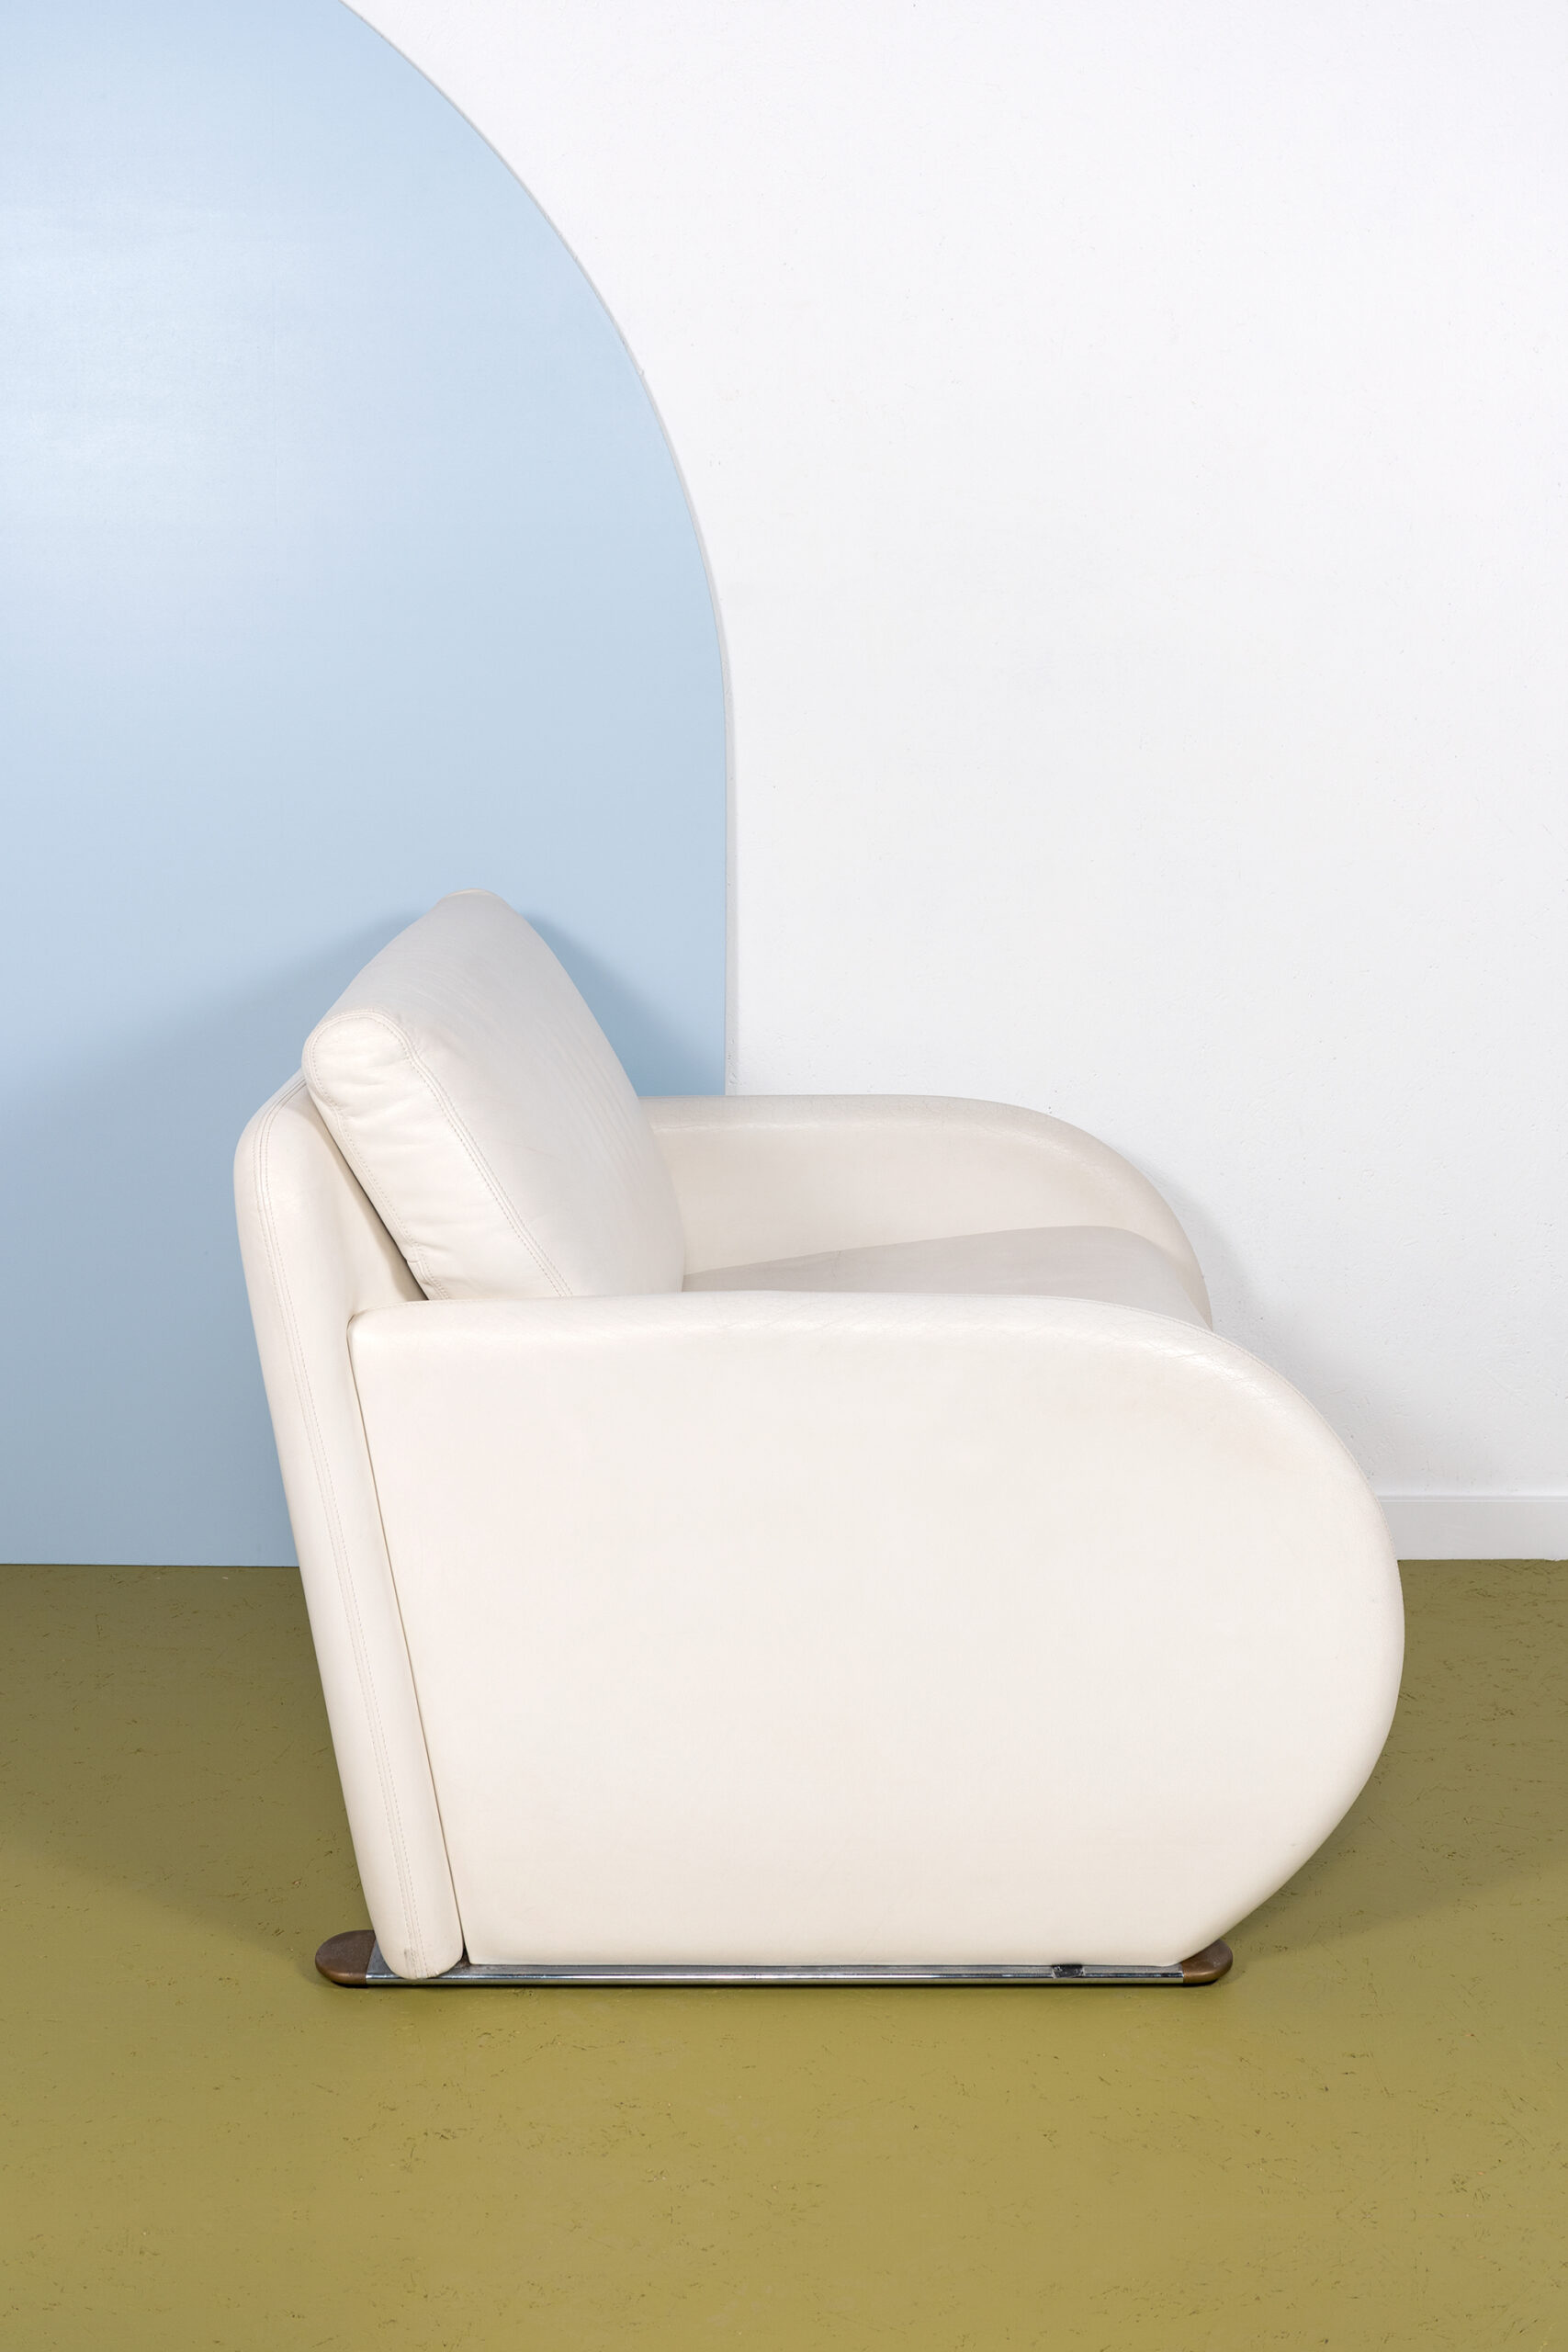 lastig Dicht transmissie Wit leren postmoderne fauteuil van Jan Armgardt voor Leolux - Enter My Attic